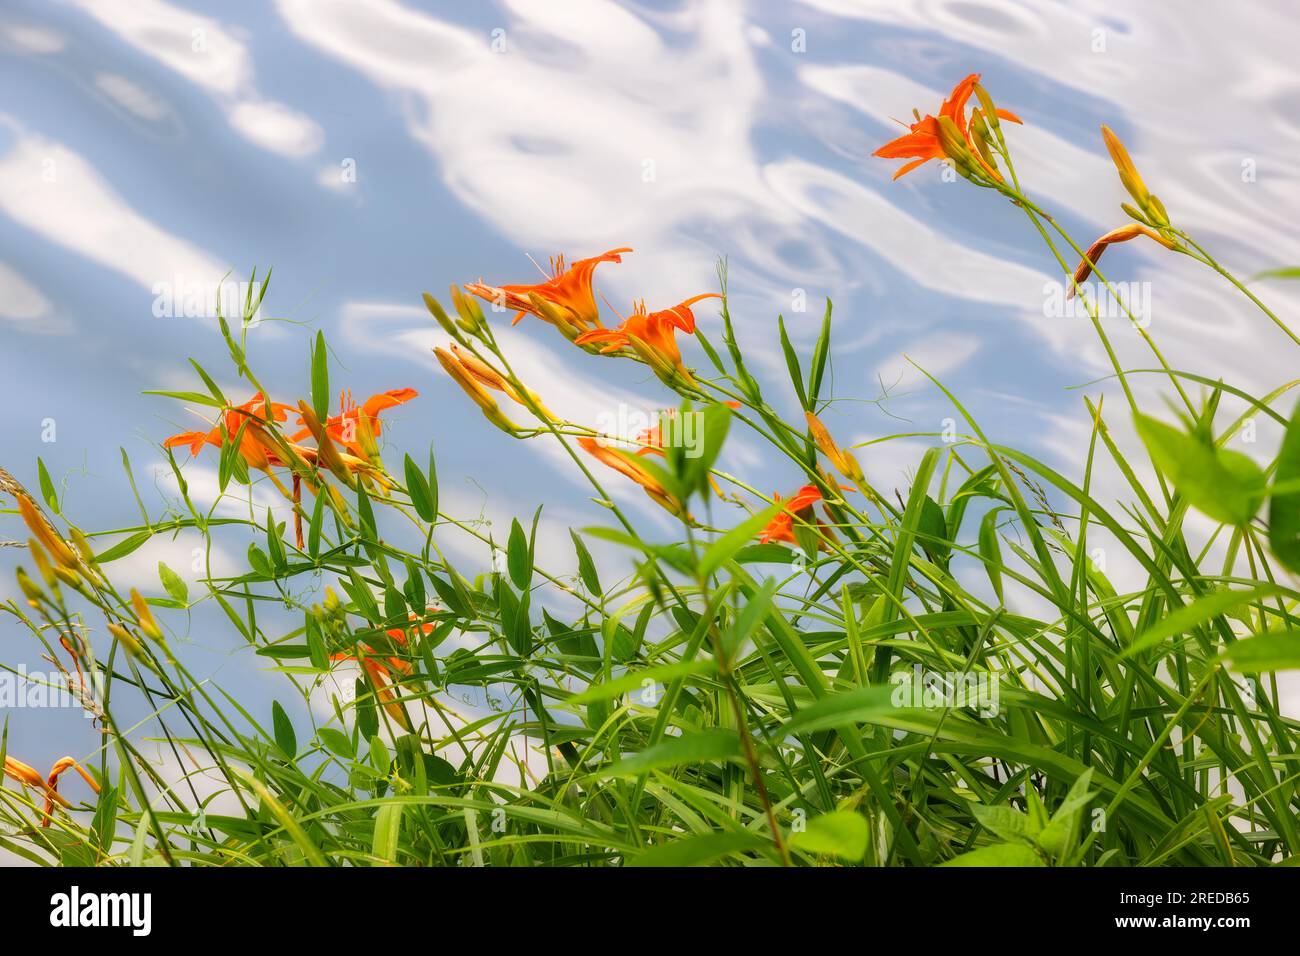 Im Steele Creek Park in Bristol, Tennessee, USA, blühende Tageslilien am Ufer aus nächster Nähe Stockfoto